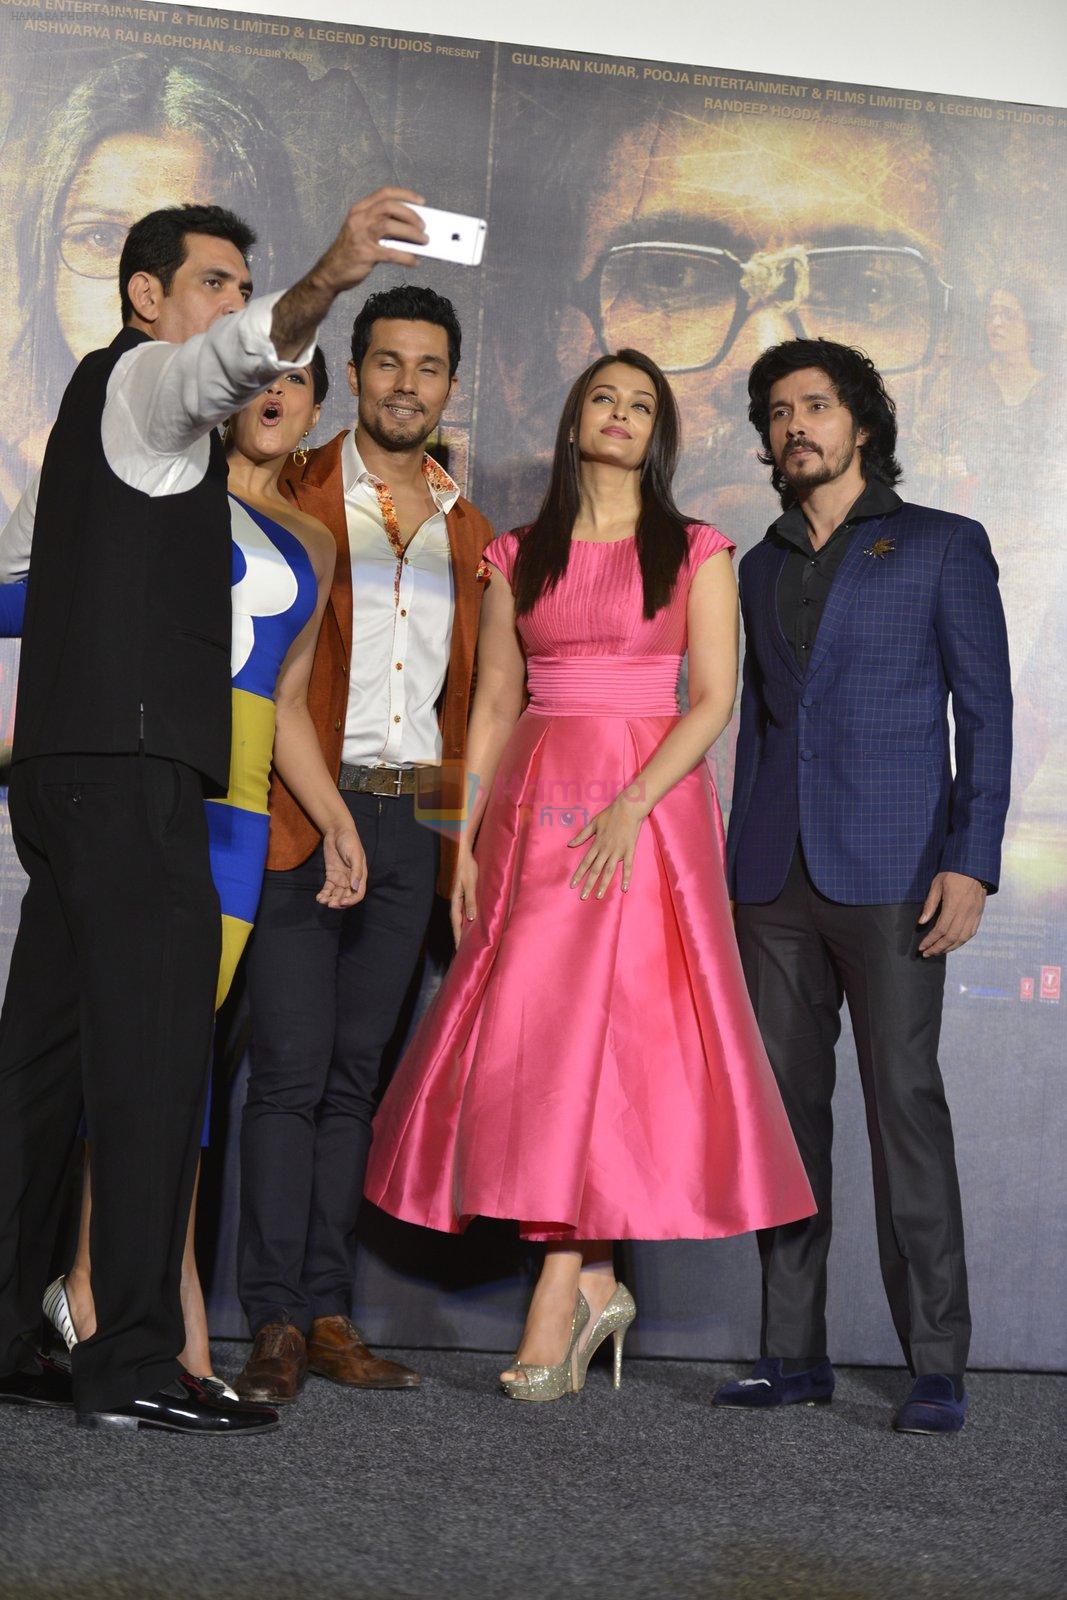 Richa Chadha, Randeep Hooda, Aishwarya Rai Bachchan, Darshan Kumaar at Sarbjit Trailer launch in Mumbai on 14th April 2016